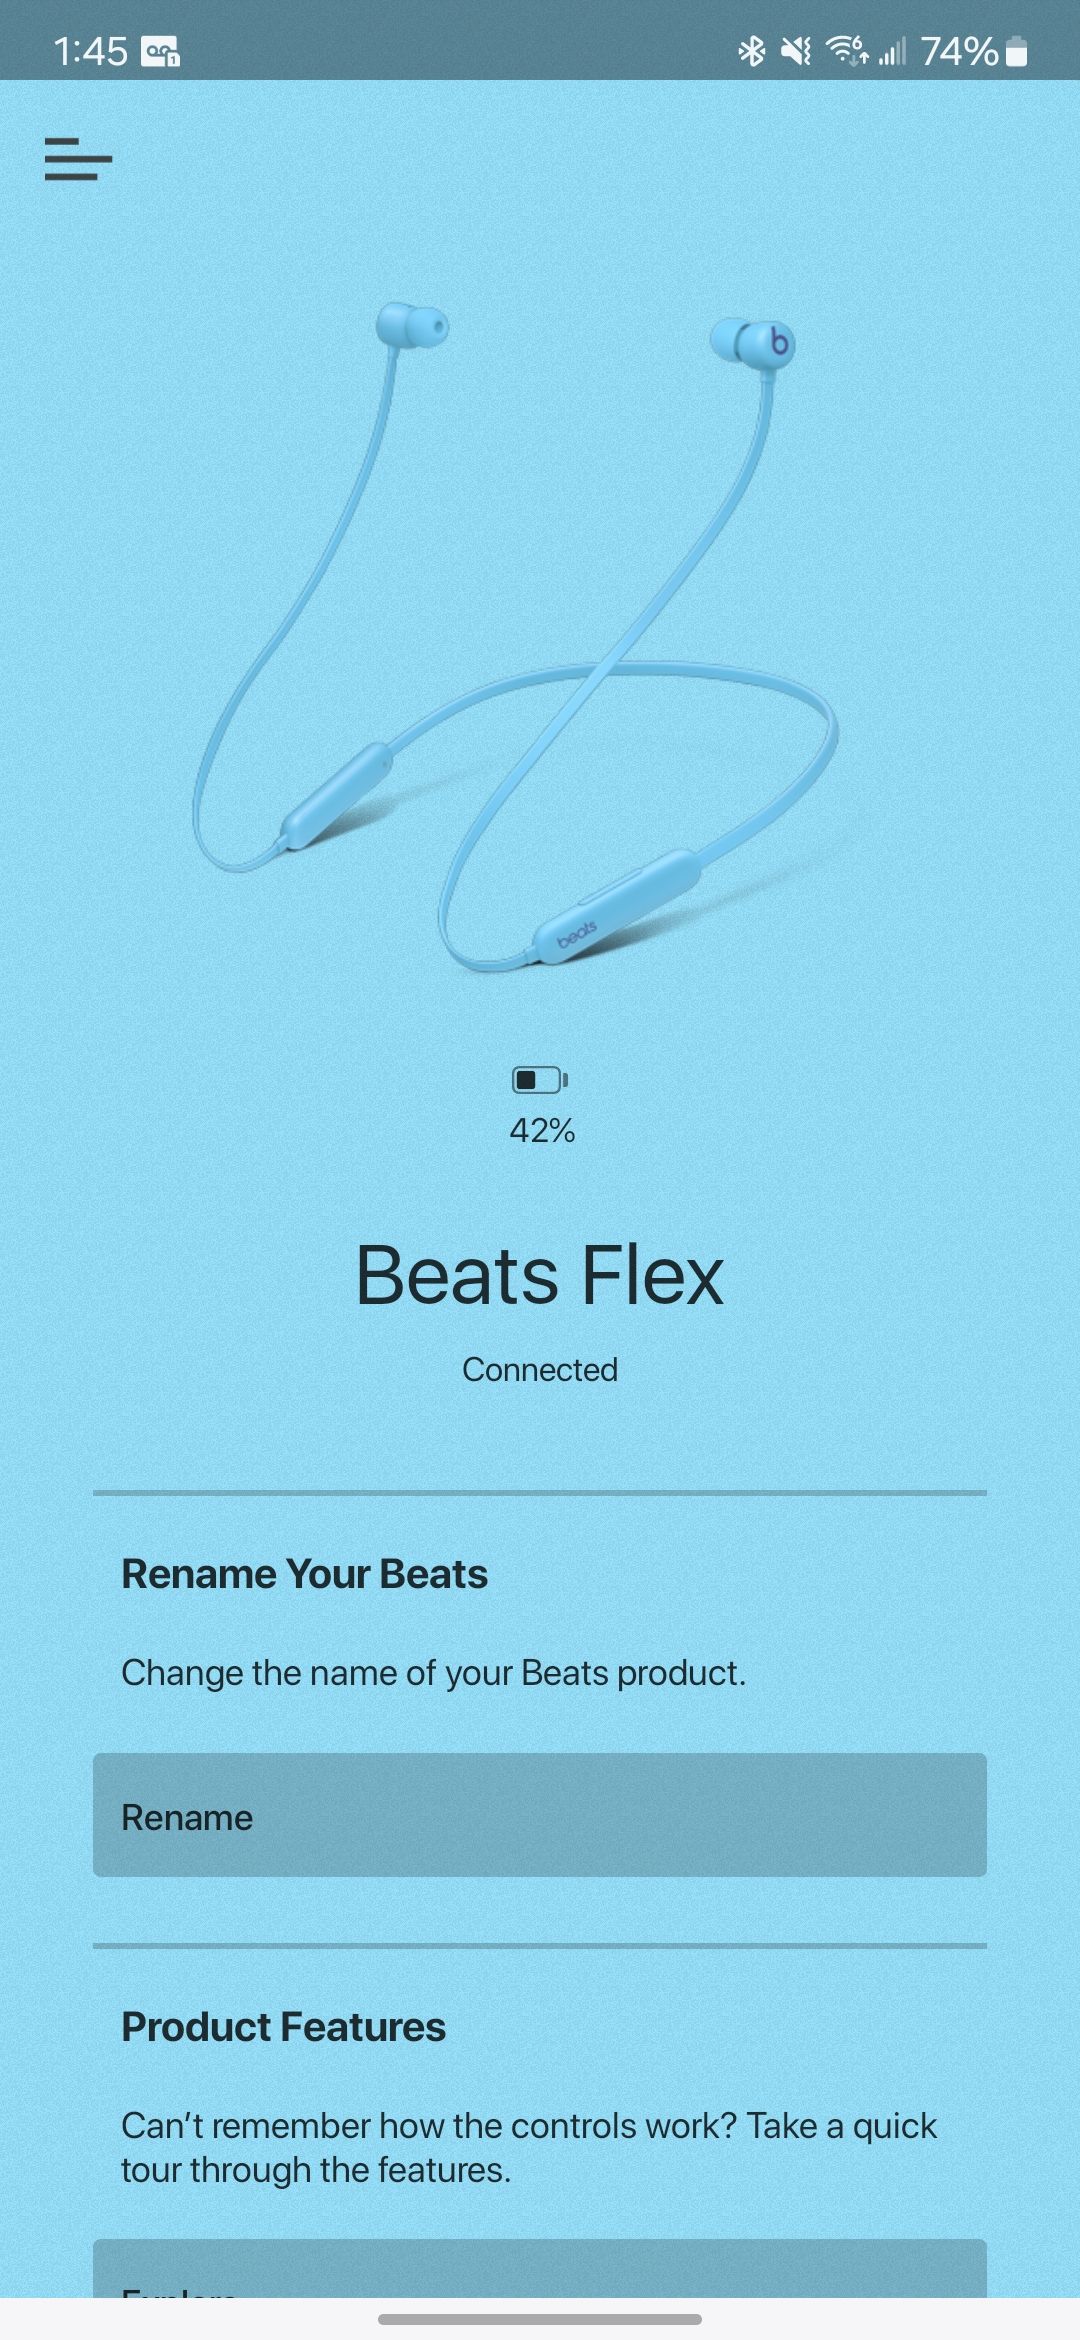 Tela inicial do aplicativo Beats Flex